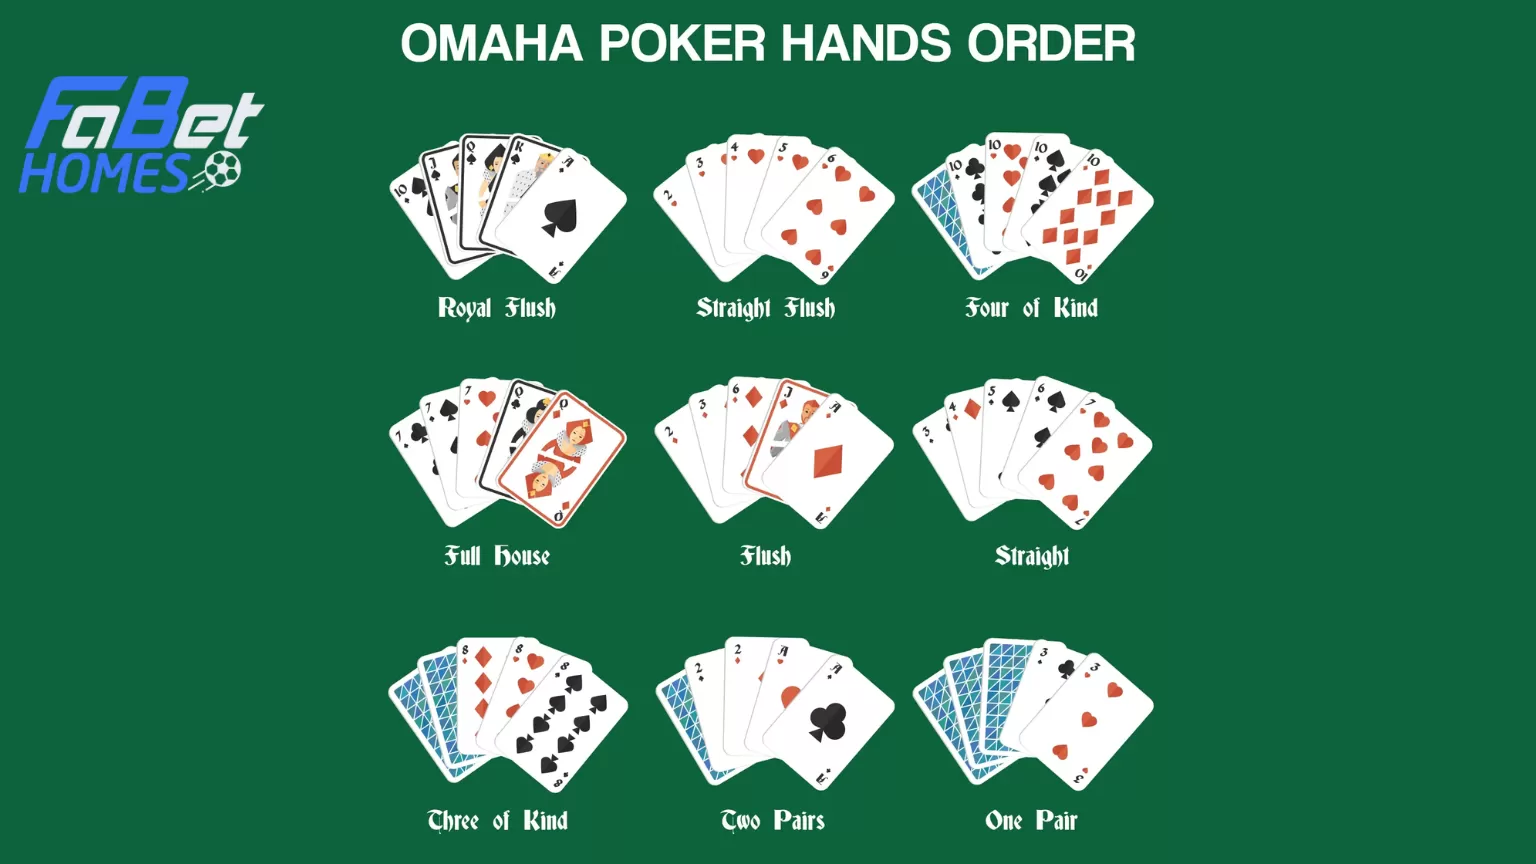 Xếp hạng các bộ bài mạnh - yếu trong Poker Ohama